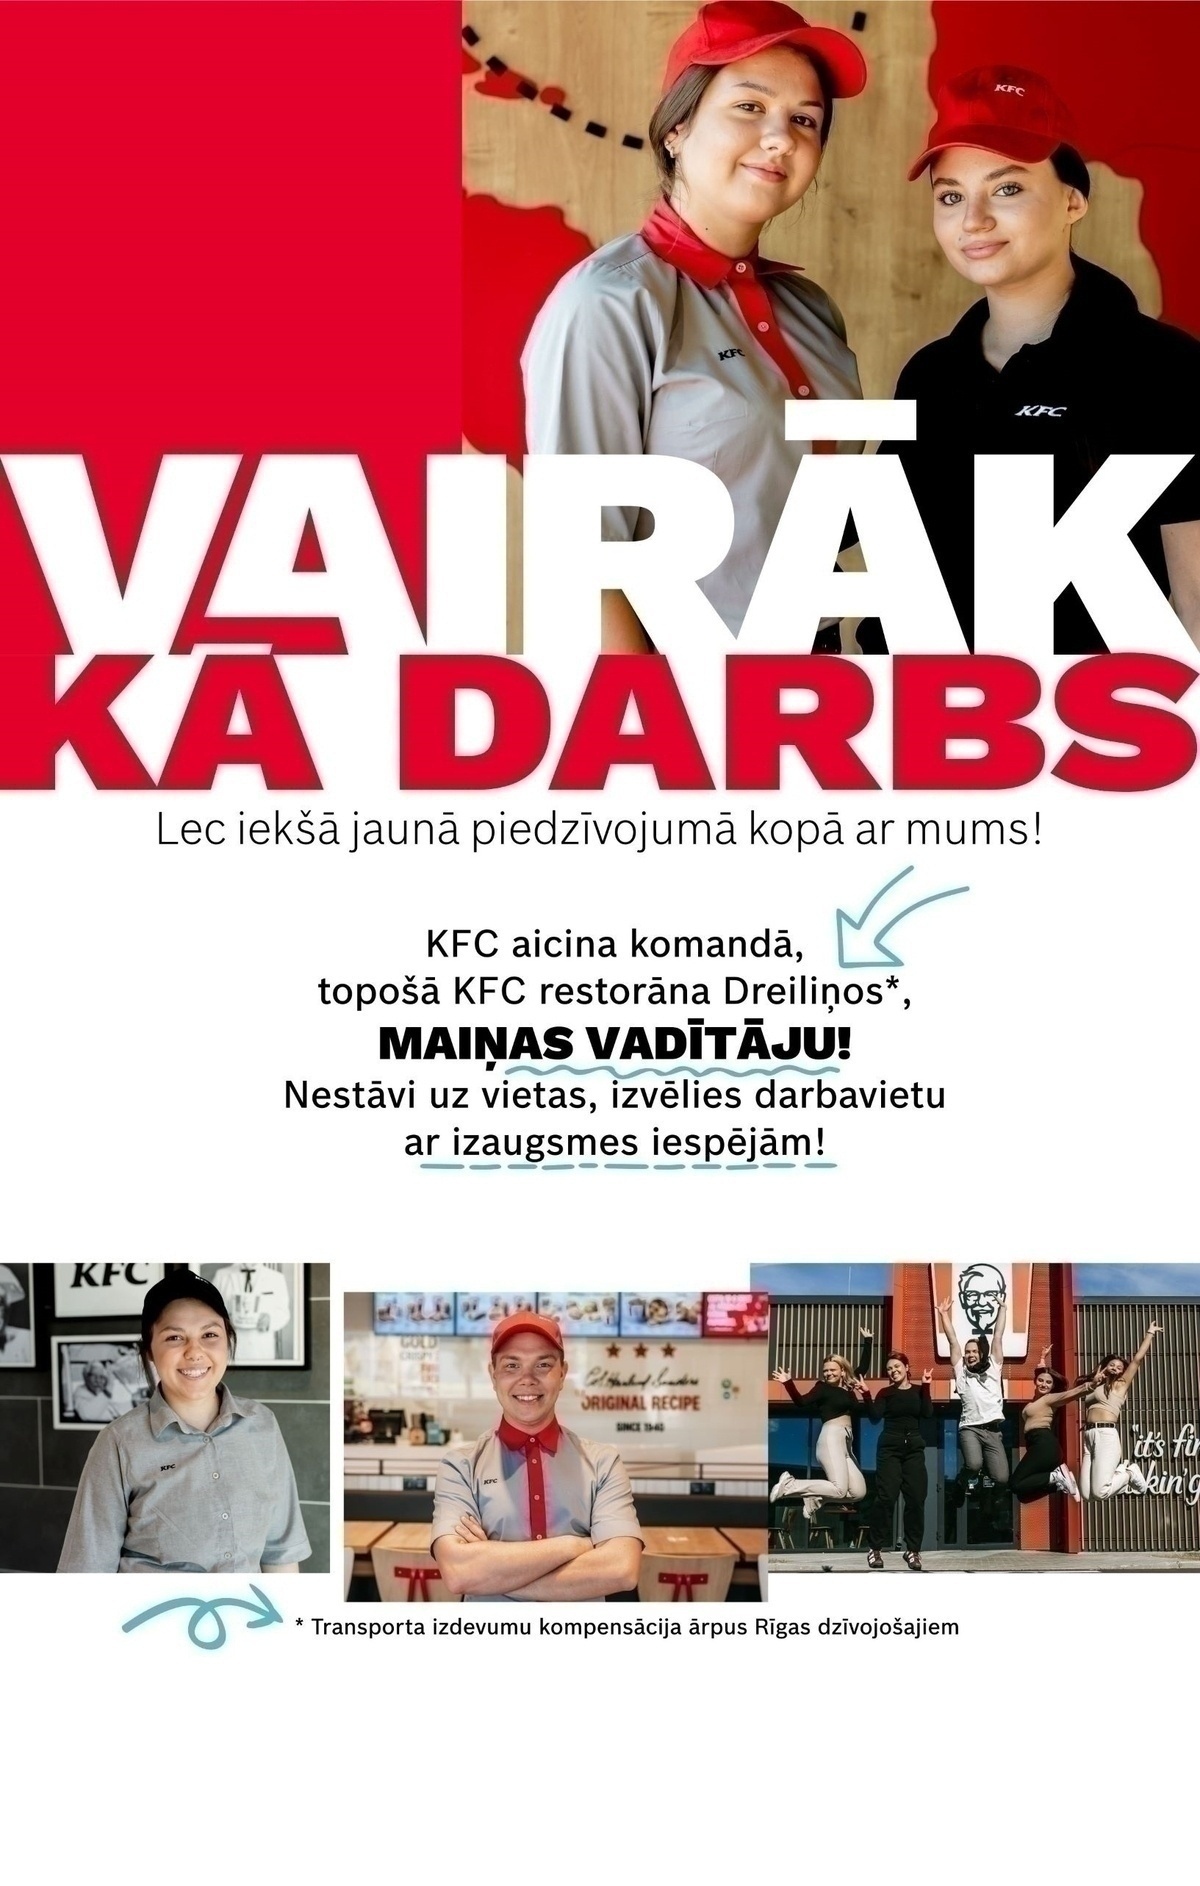 CVMarket.lv klients "KFC" restorāna komandas vadītājs/a (Juglas iela 95)